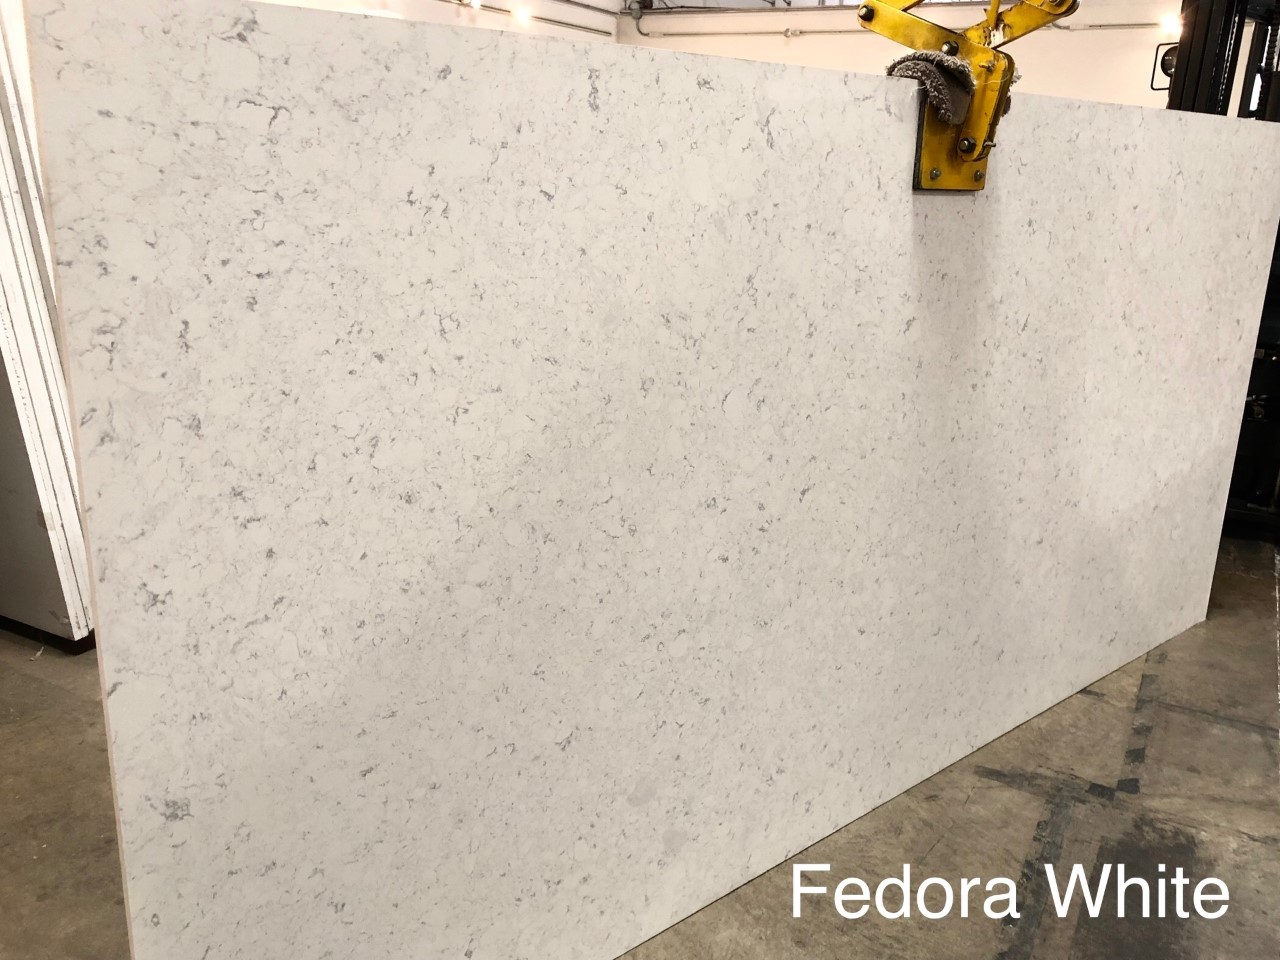 Fedora White New Kitchen Countertops Quartz Granite Installation